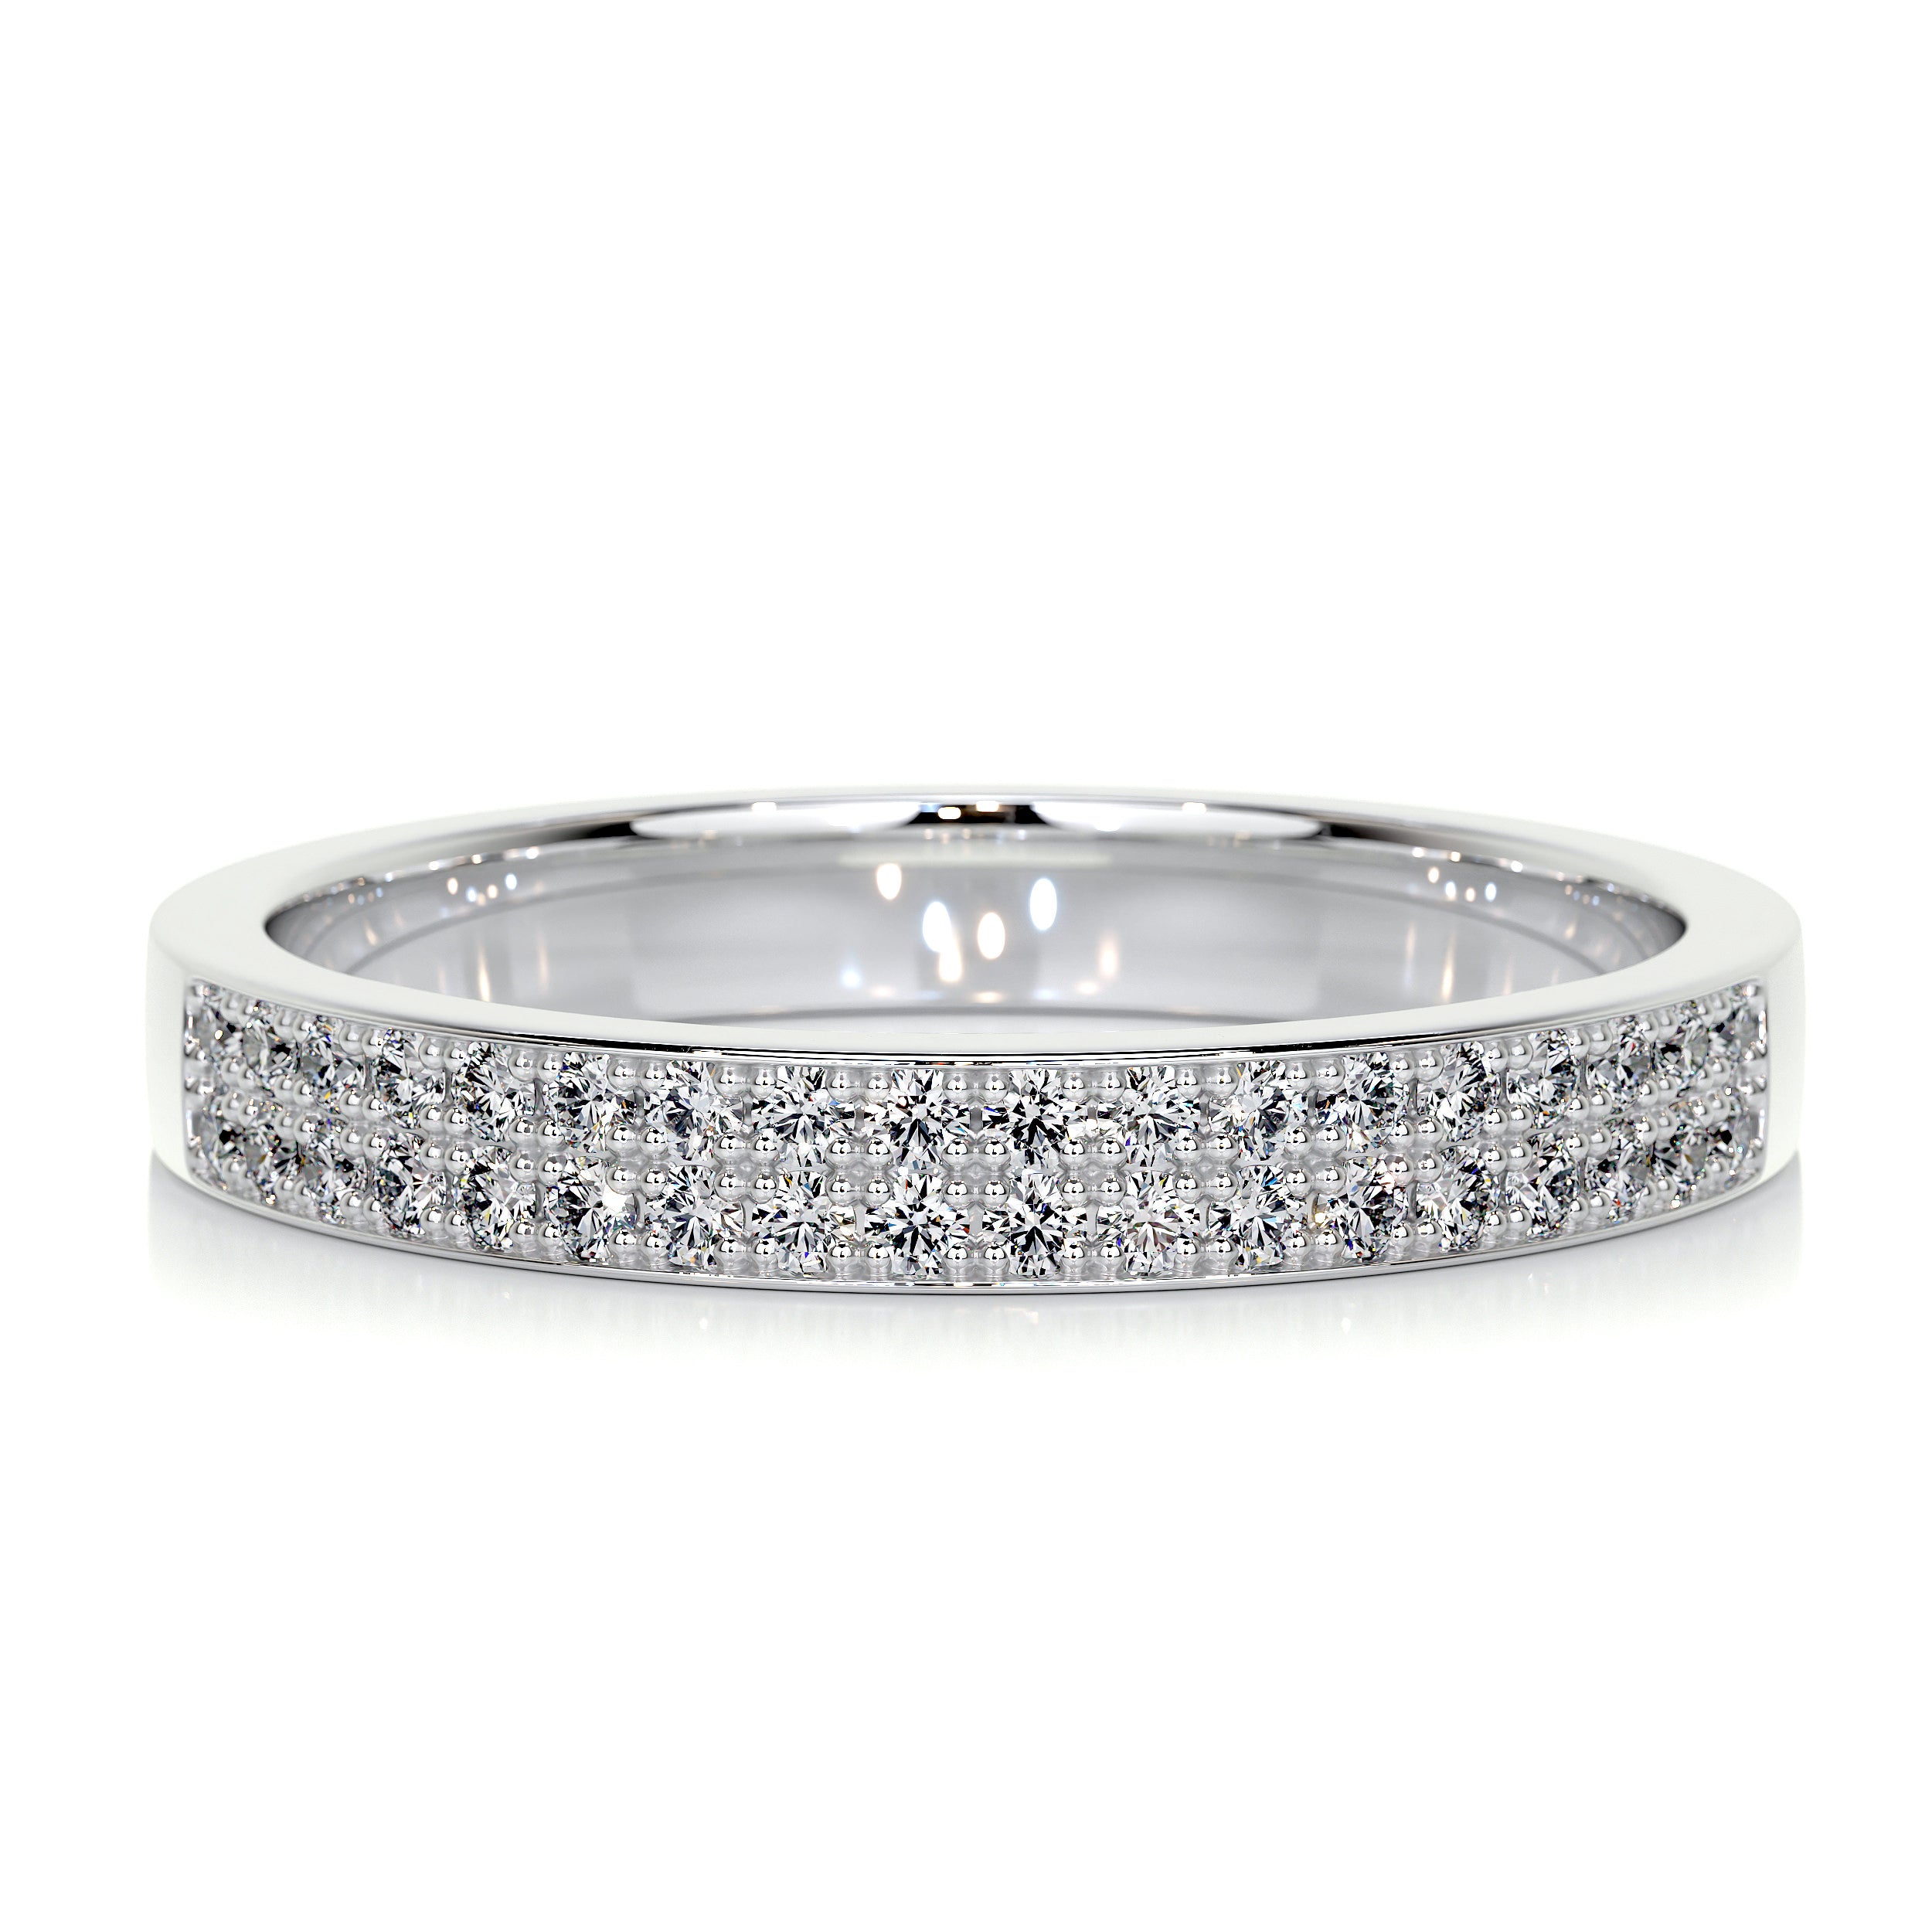 June Diamond Wedding Ring   (0.2 Carat) - 14K White Gold